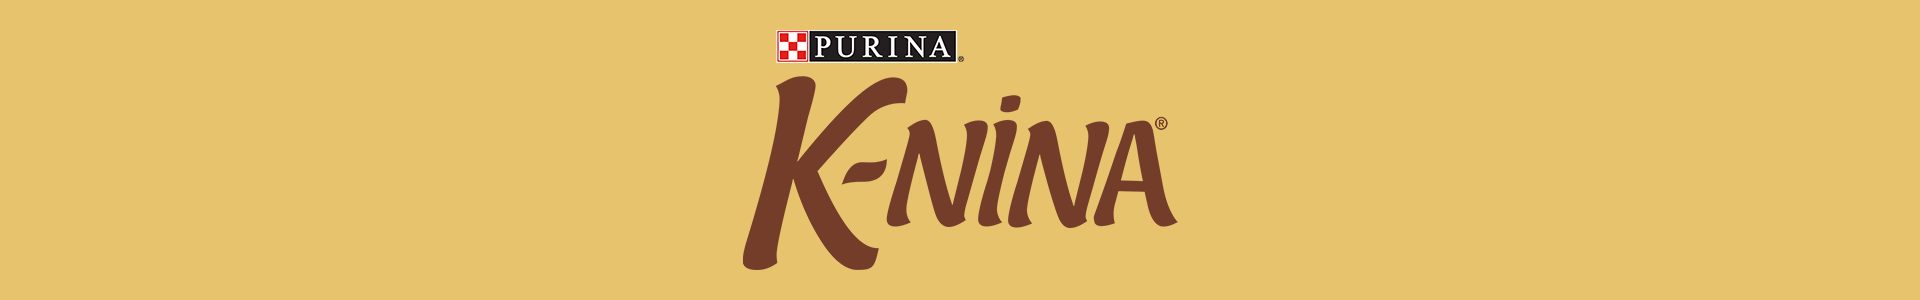 K-NINA®